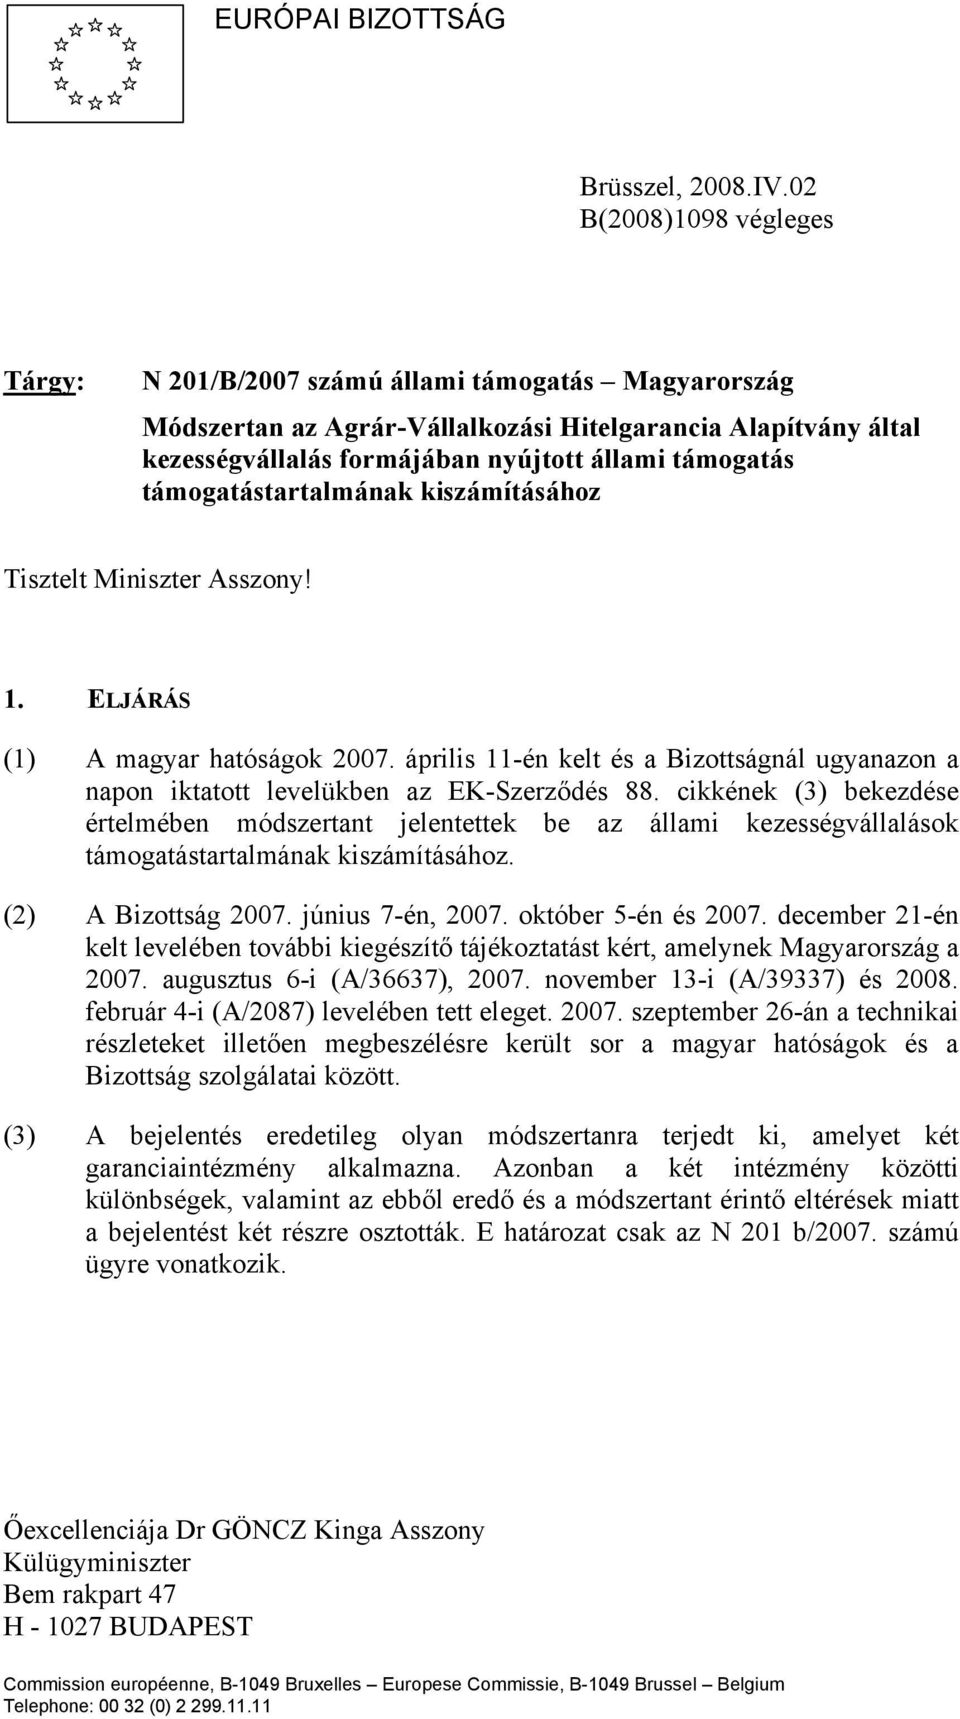 támogatástartalmának kiszámításához Tisztelt Miniszter Asszony! 1. ELJÁRÁS (1) A magyar hatóságok 2007. április 11-én kelt és a Bizottságnál ugyanazon a napon iktatott levelükben az EK-Szerződés 88.